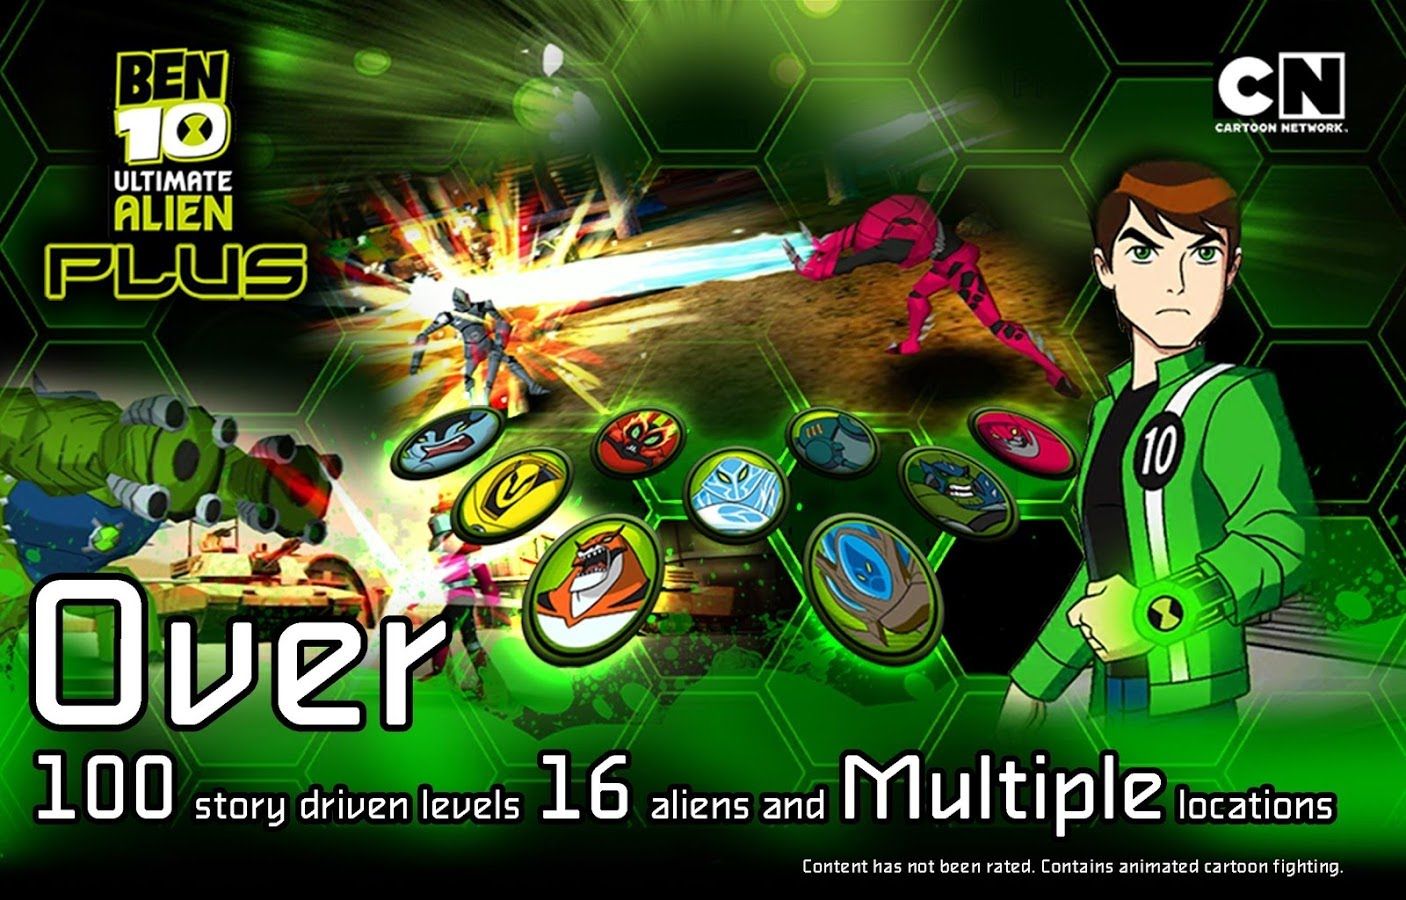 play games online ben 10 ultimate alien